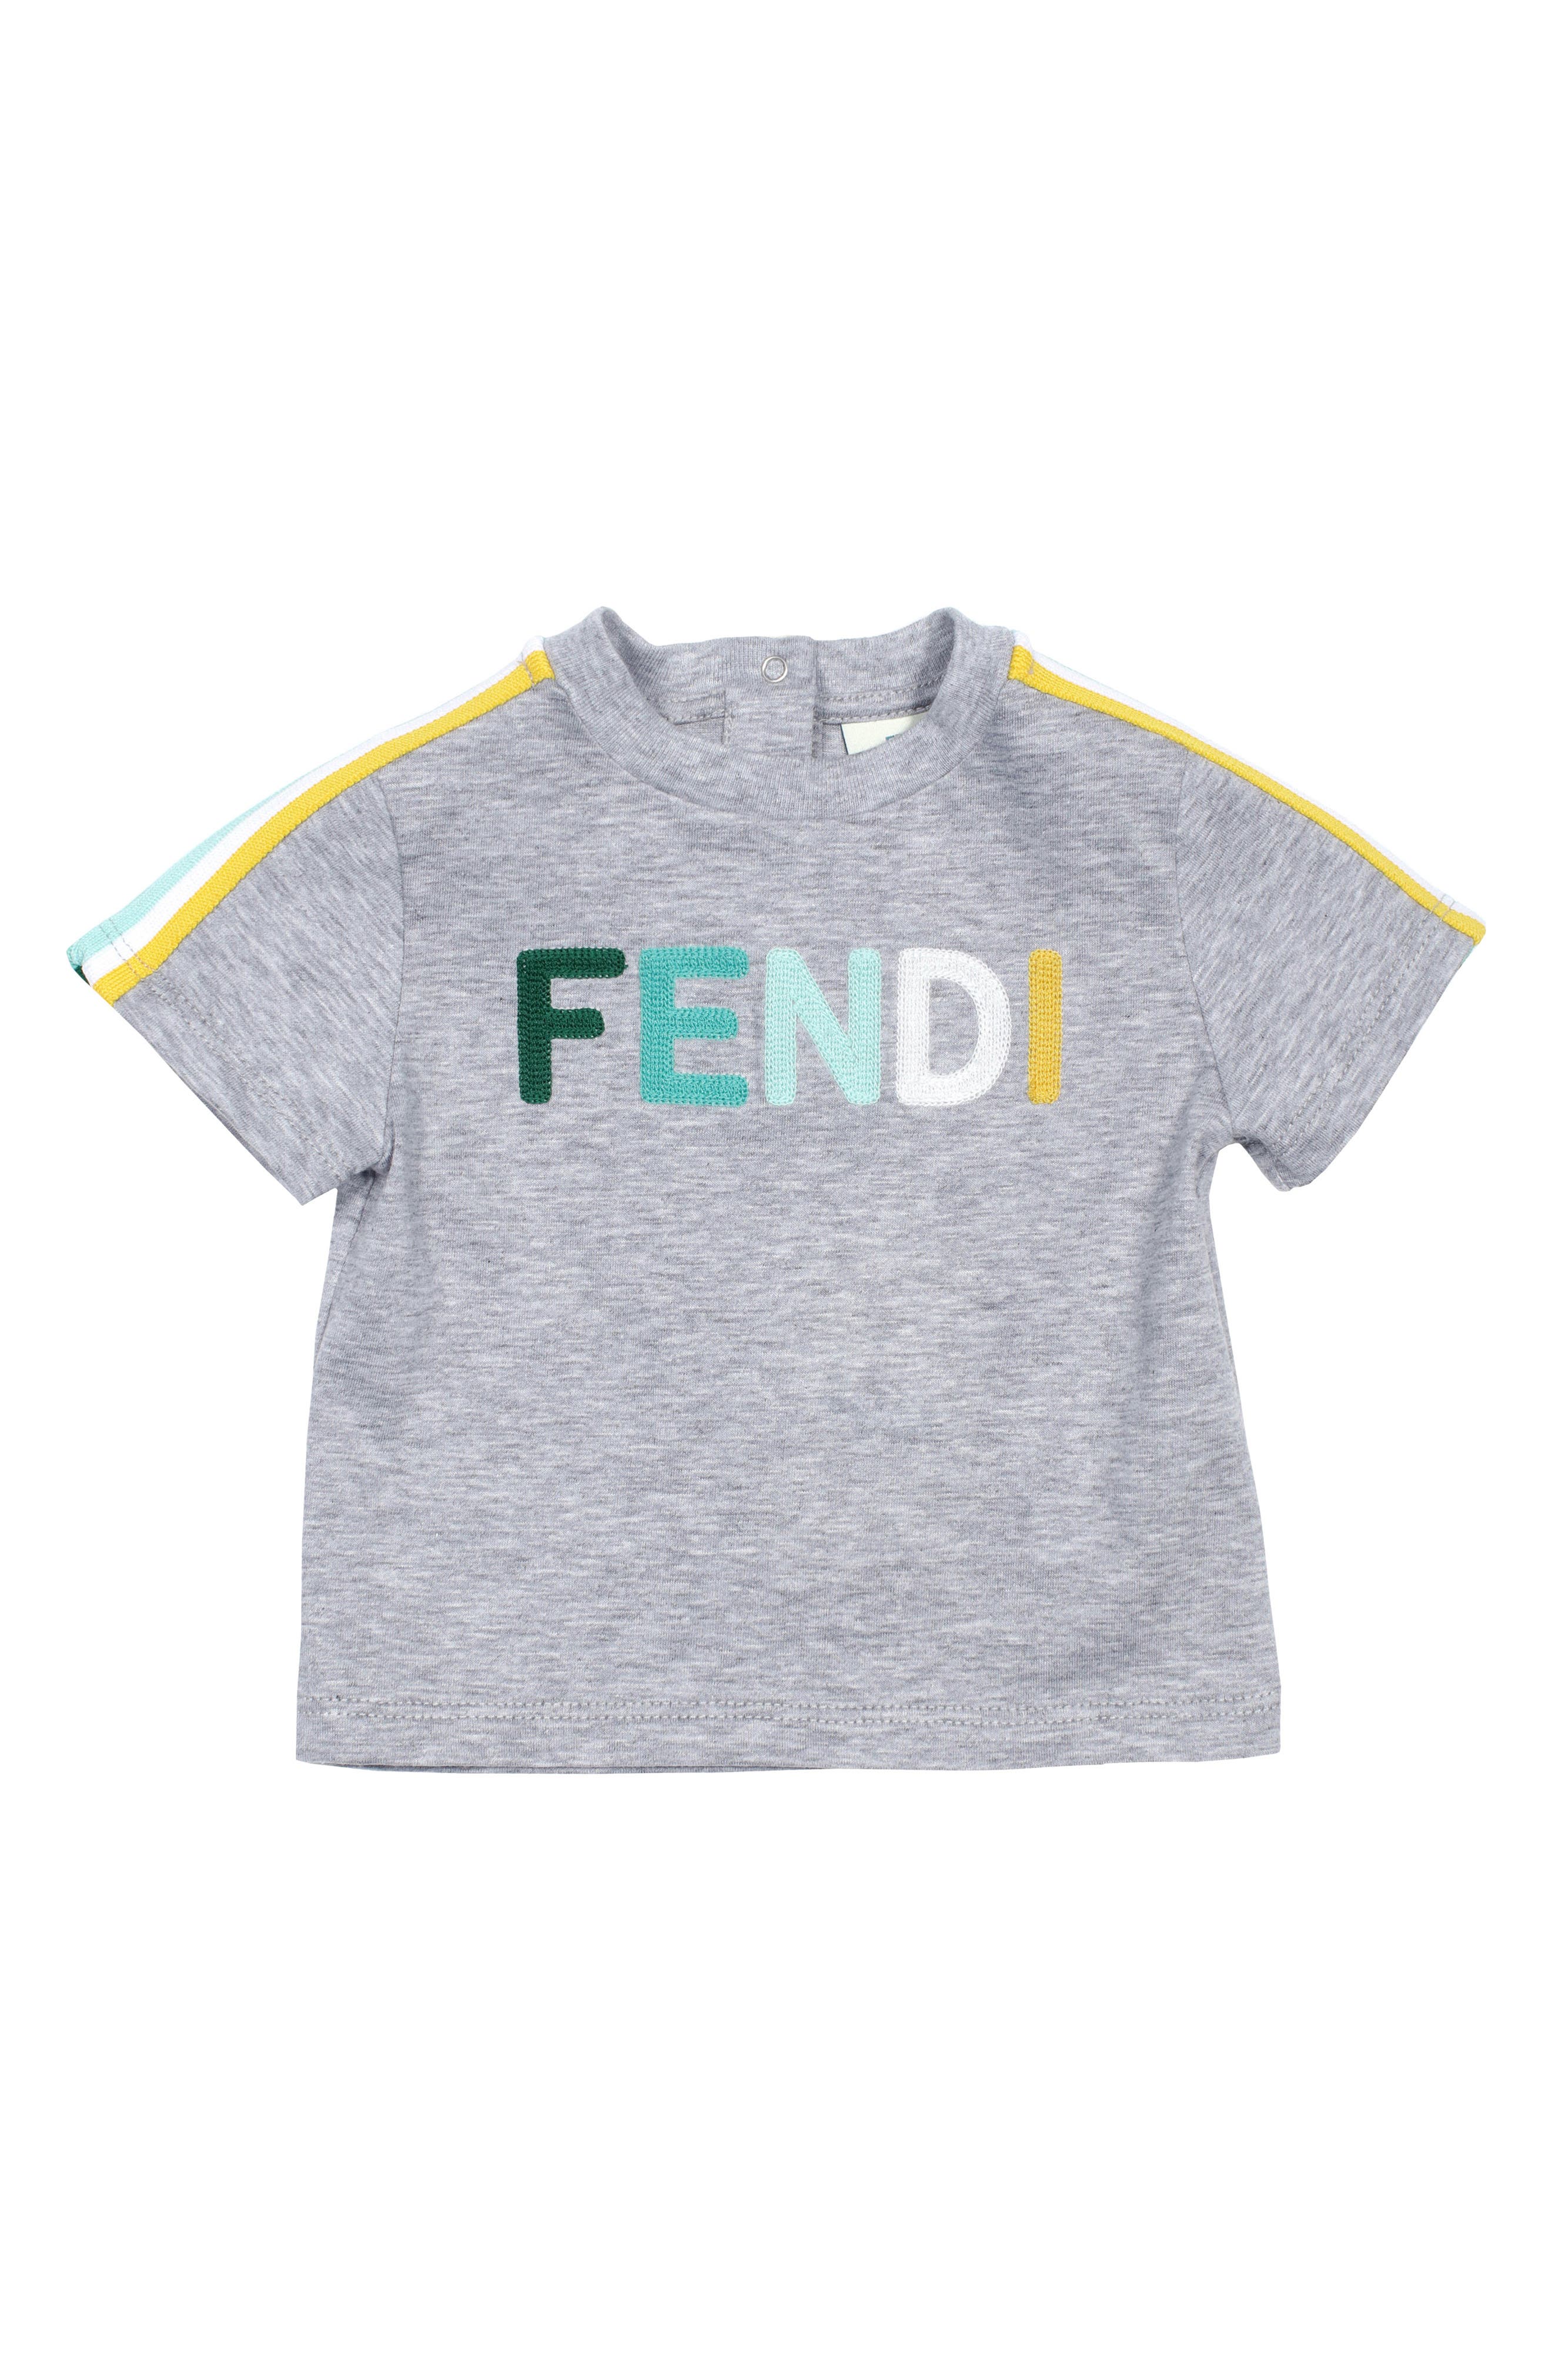 Boys' Fendi Clothing: Hoodies, Shirts 